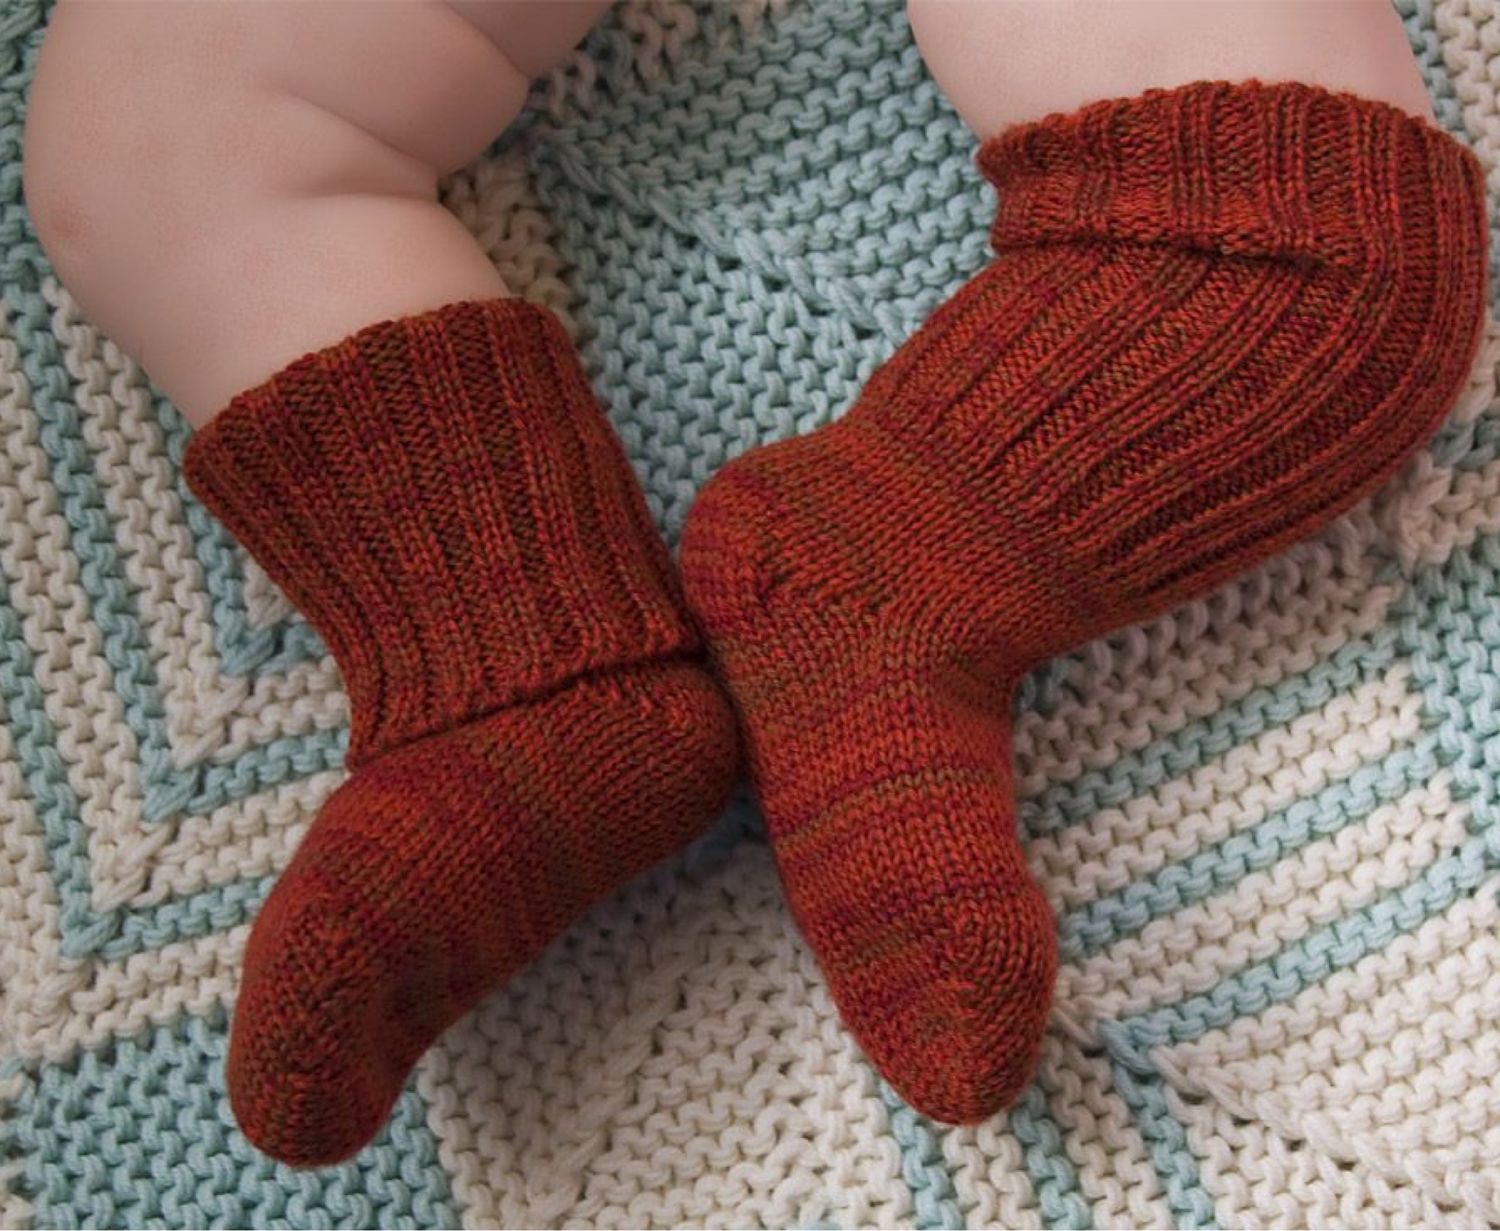 Вязание носков детям